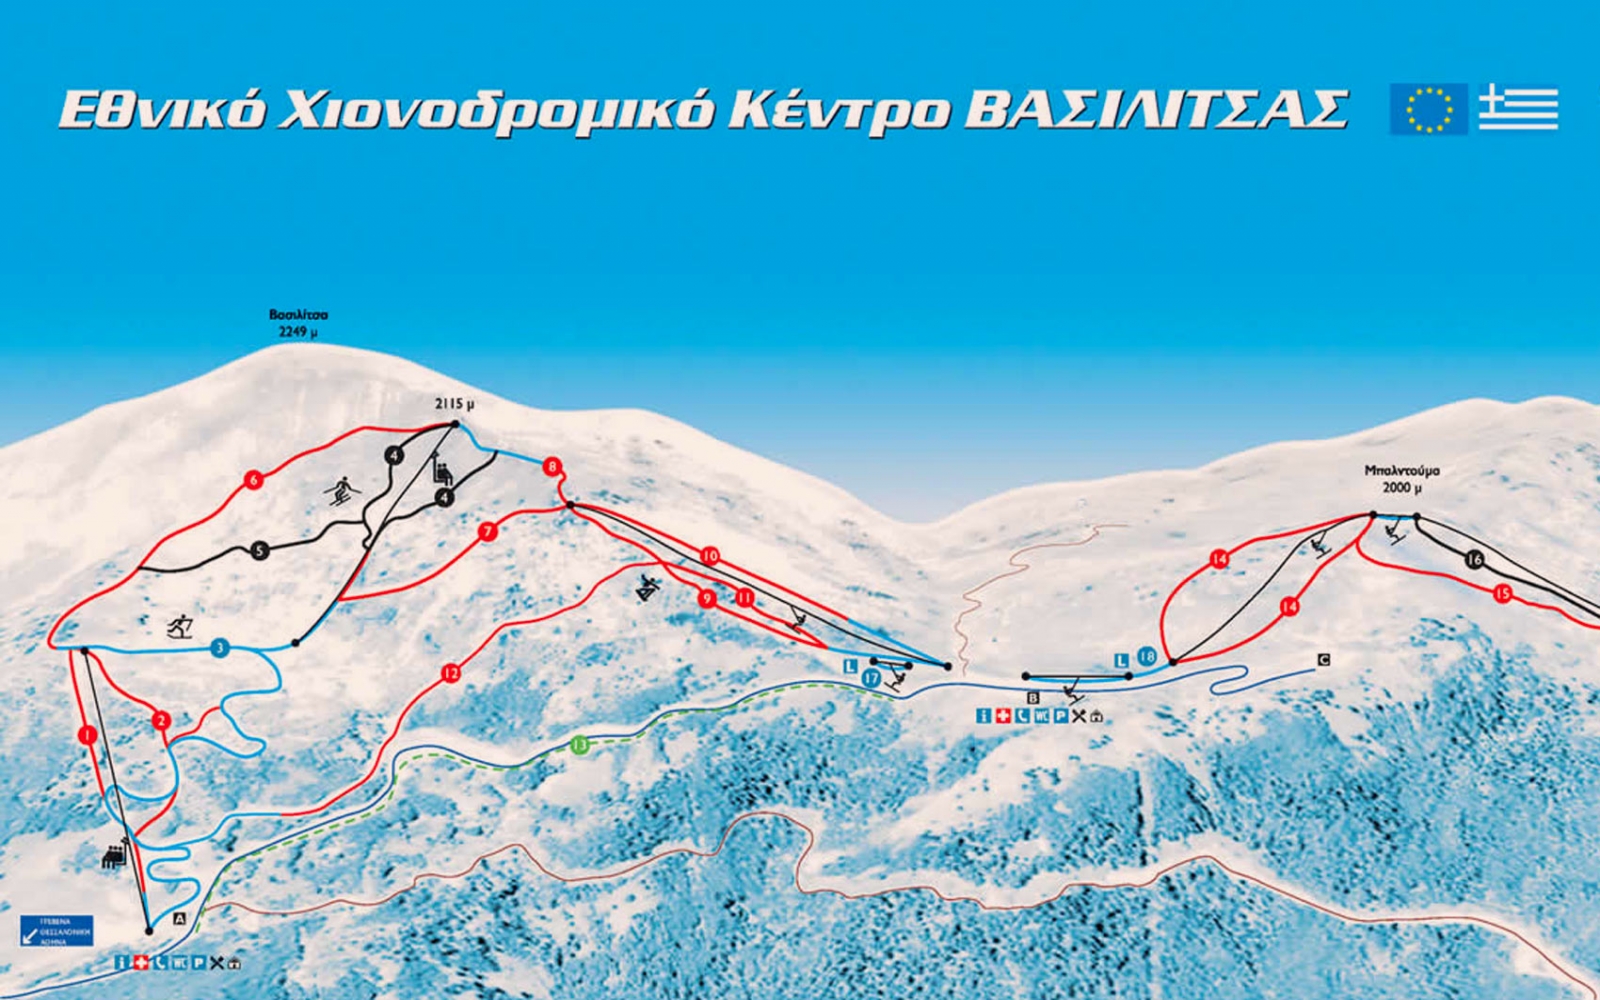 Vasilitsa Ski Center